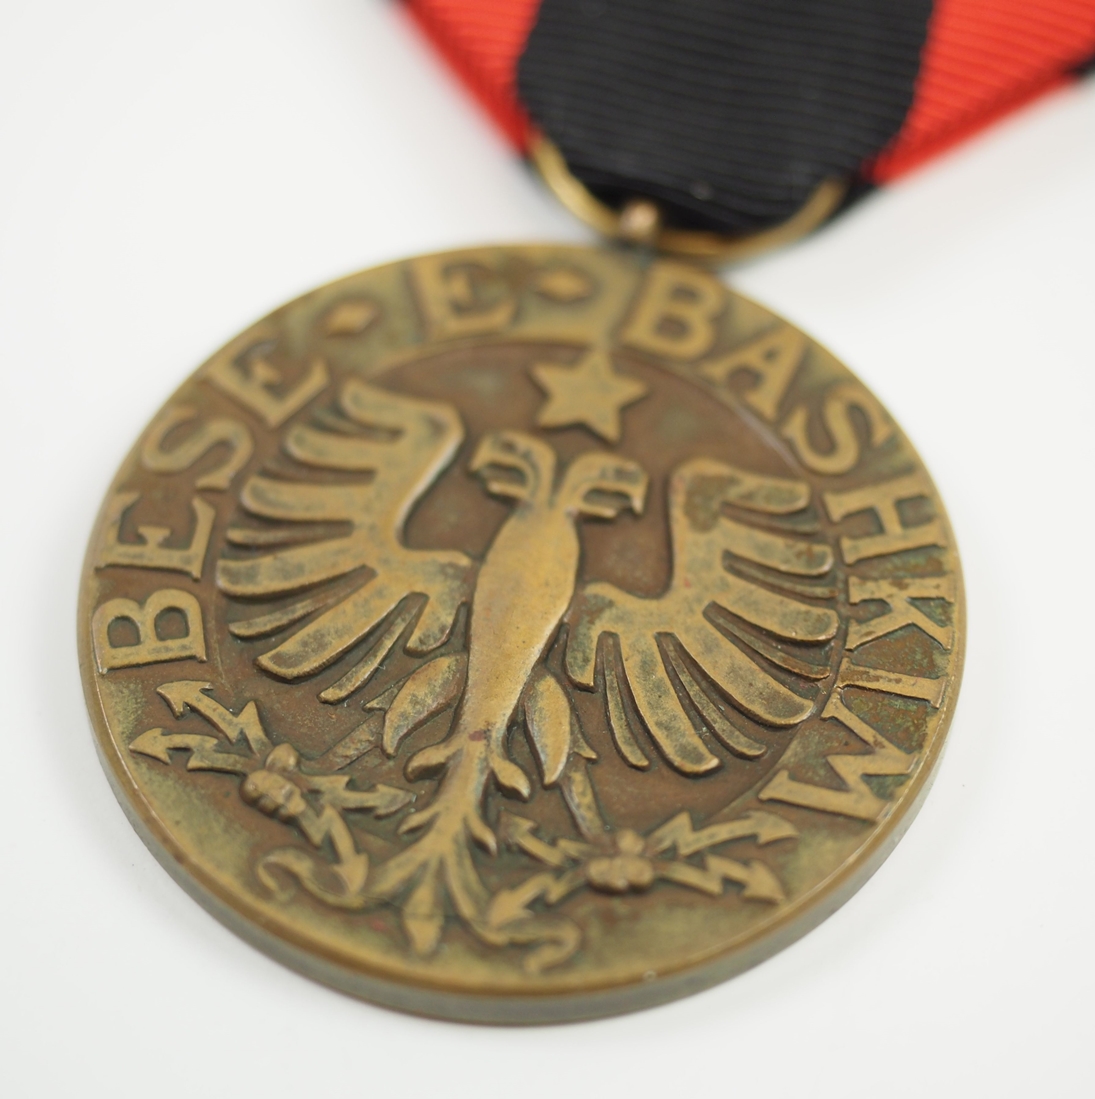 Albanien: Orden vom Schwarzen Adler, Bronze Medaille. - Bild 2 aus 3